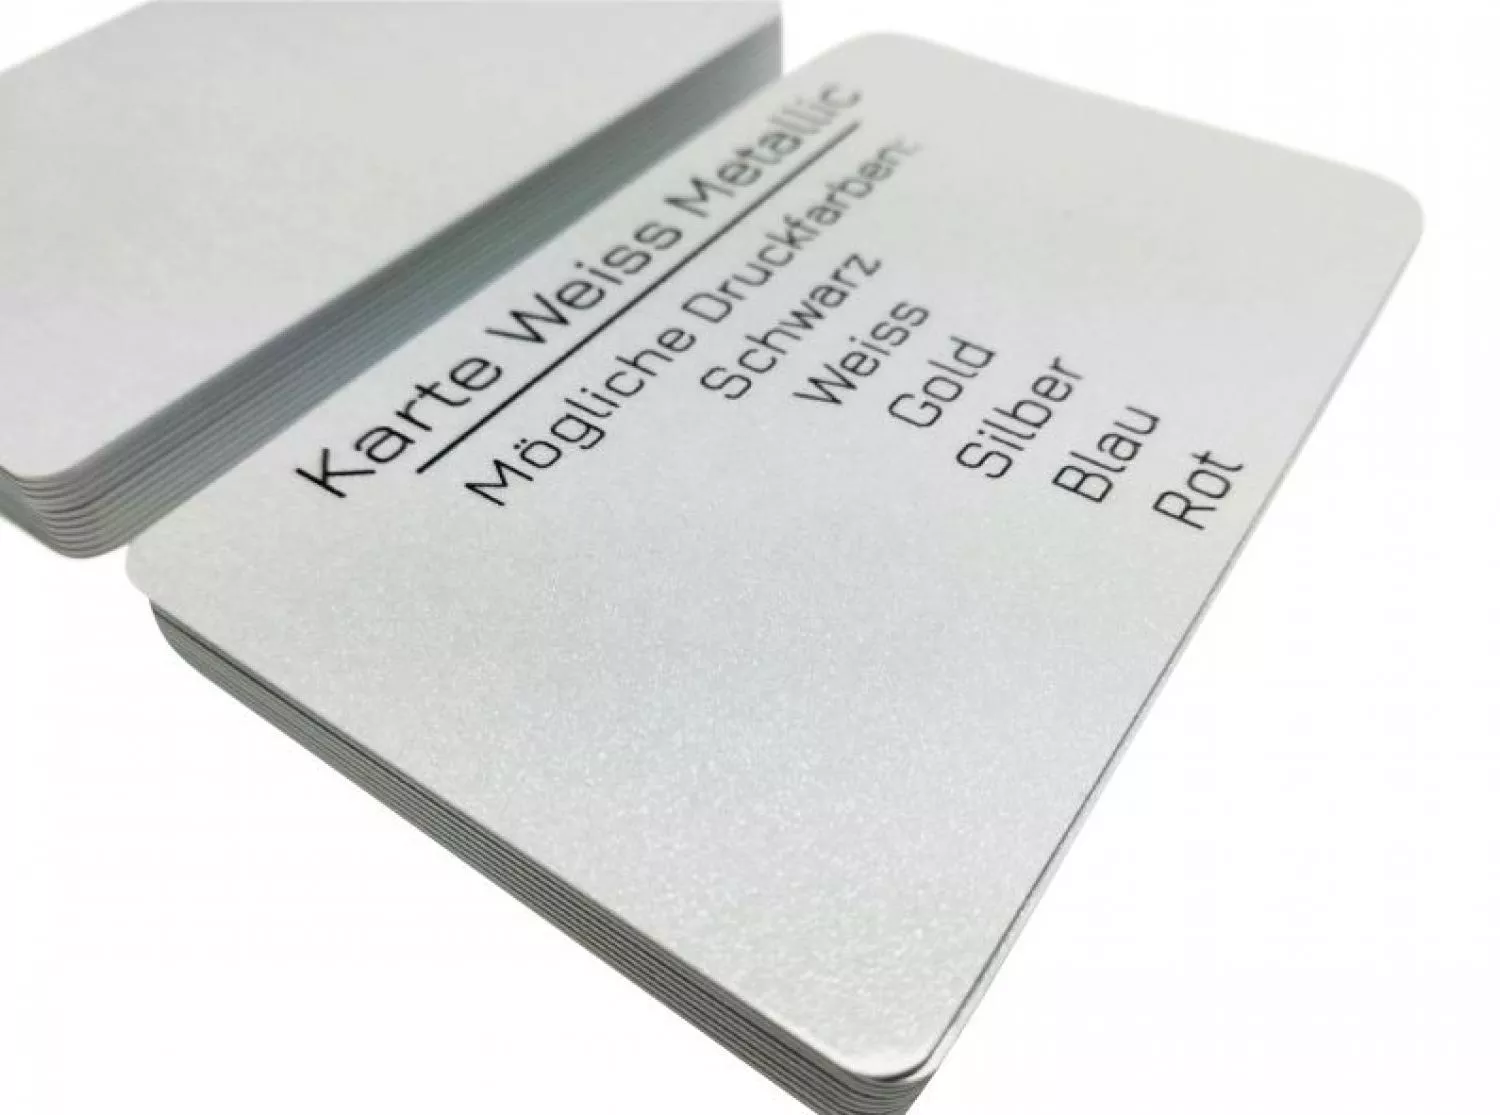 Plastikkarte weiß metallic mit Unterschriftfeld